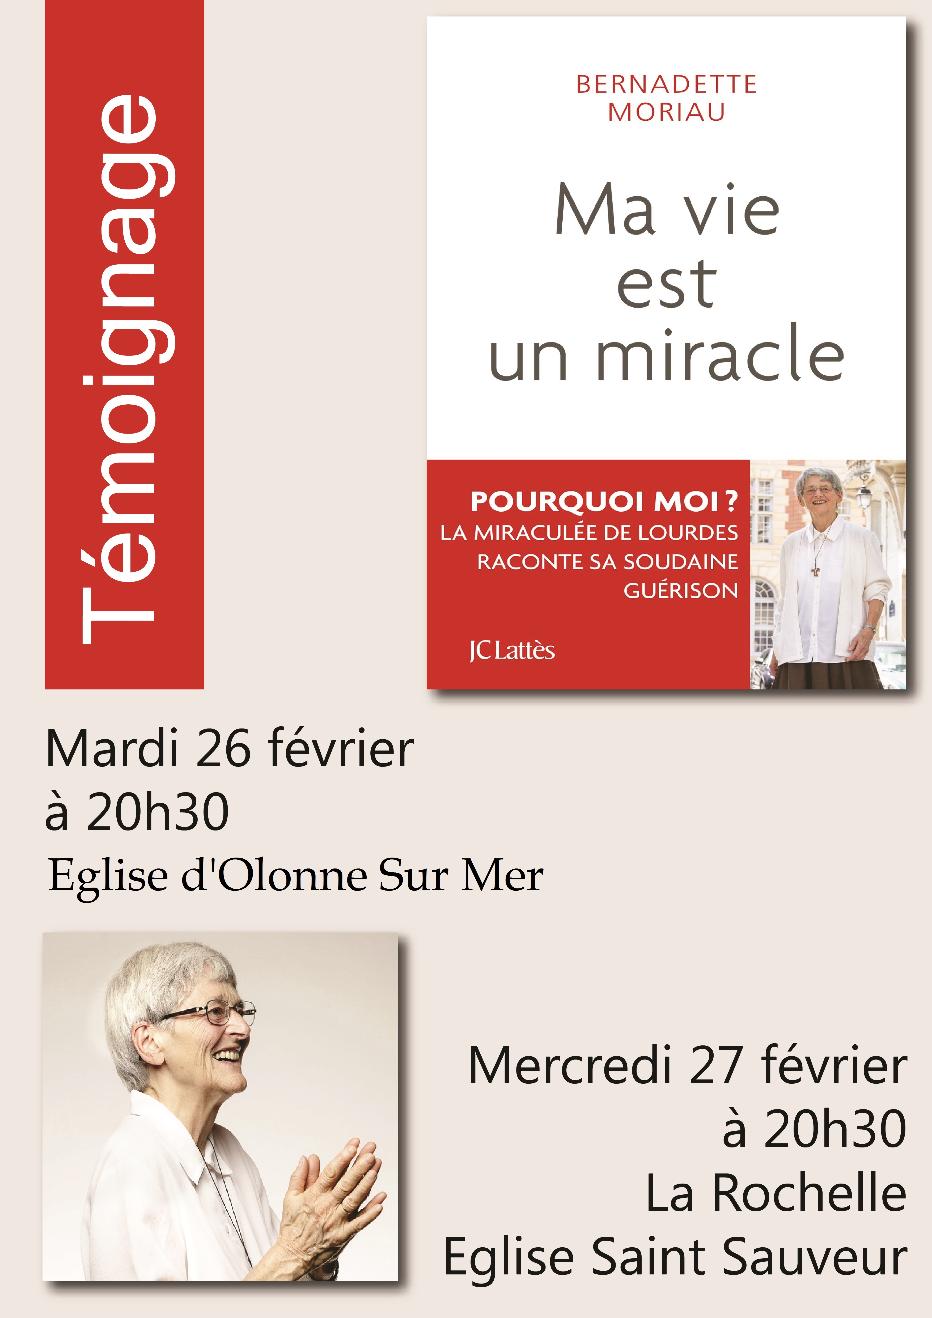 Témoignage de Bernadette Moriau : "Ma vie est un miracle"